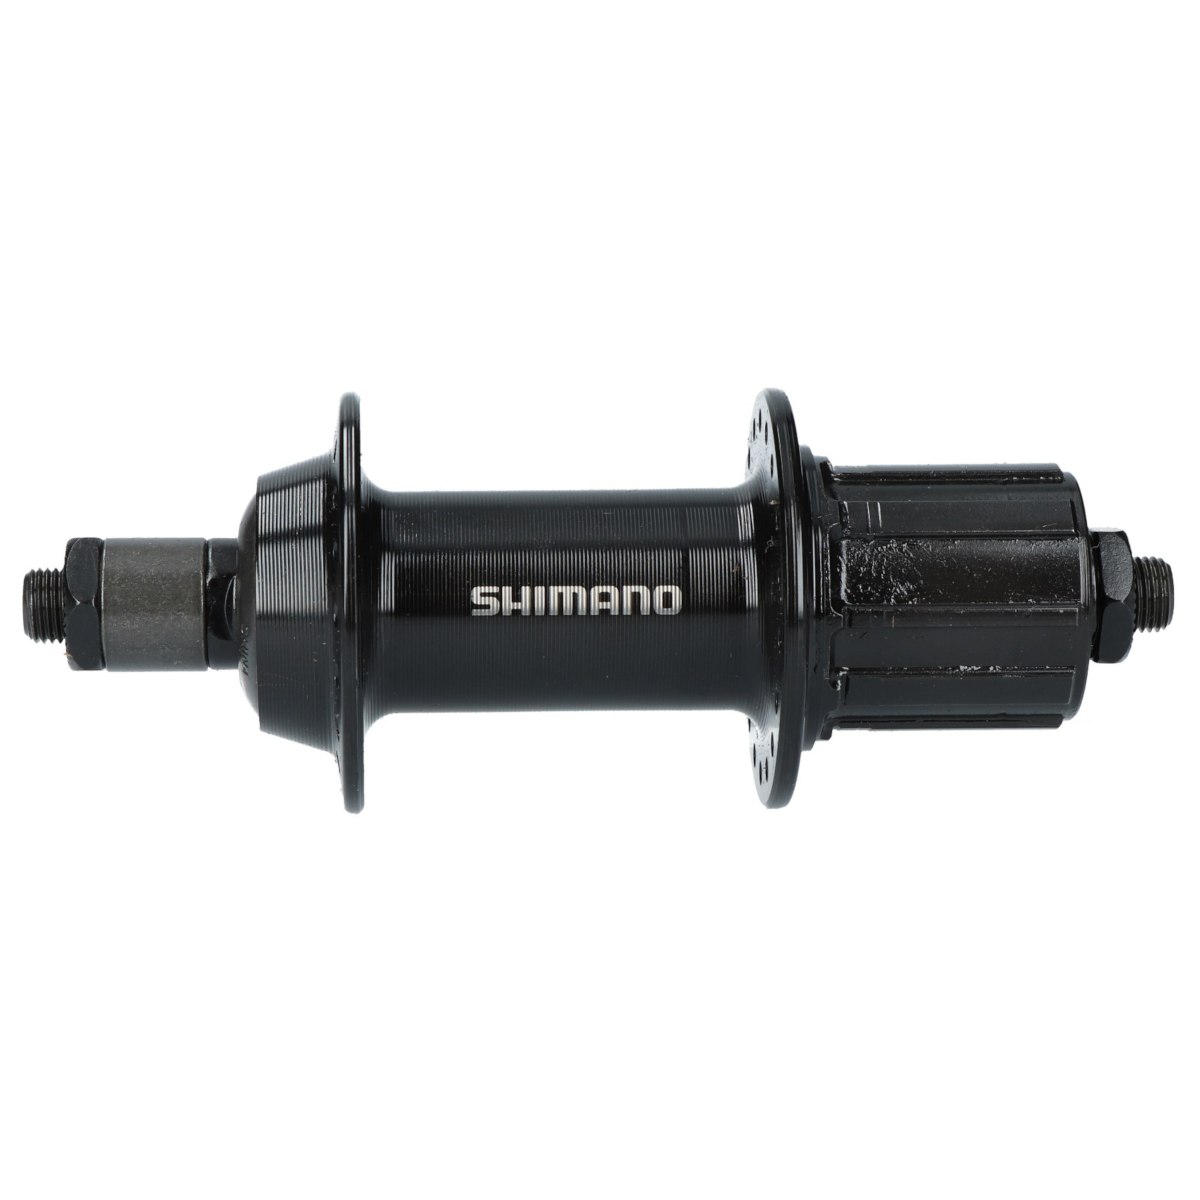 Produktbild von Shimano Tourney FH-TY500-7-QR Hinterradnabe - Felgenbremse - 7-fach - 10x135mm QR - schwarz